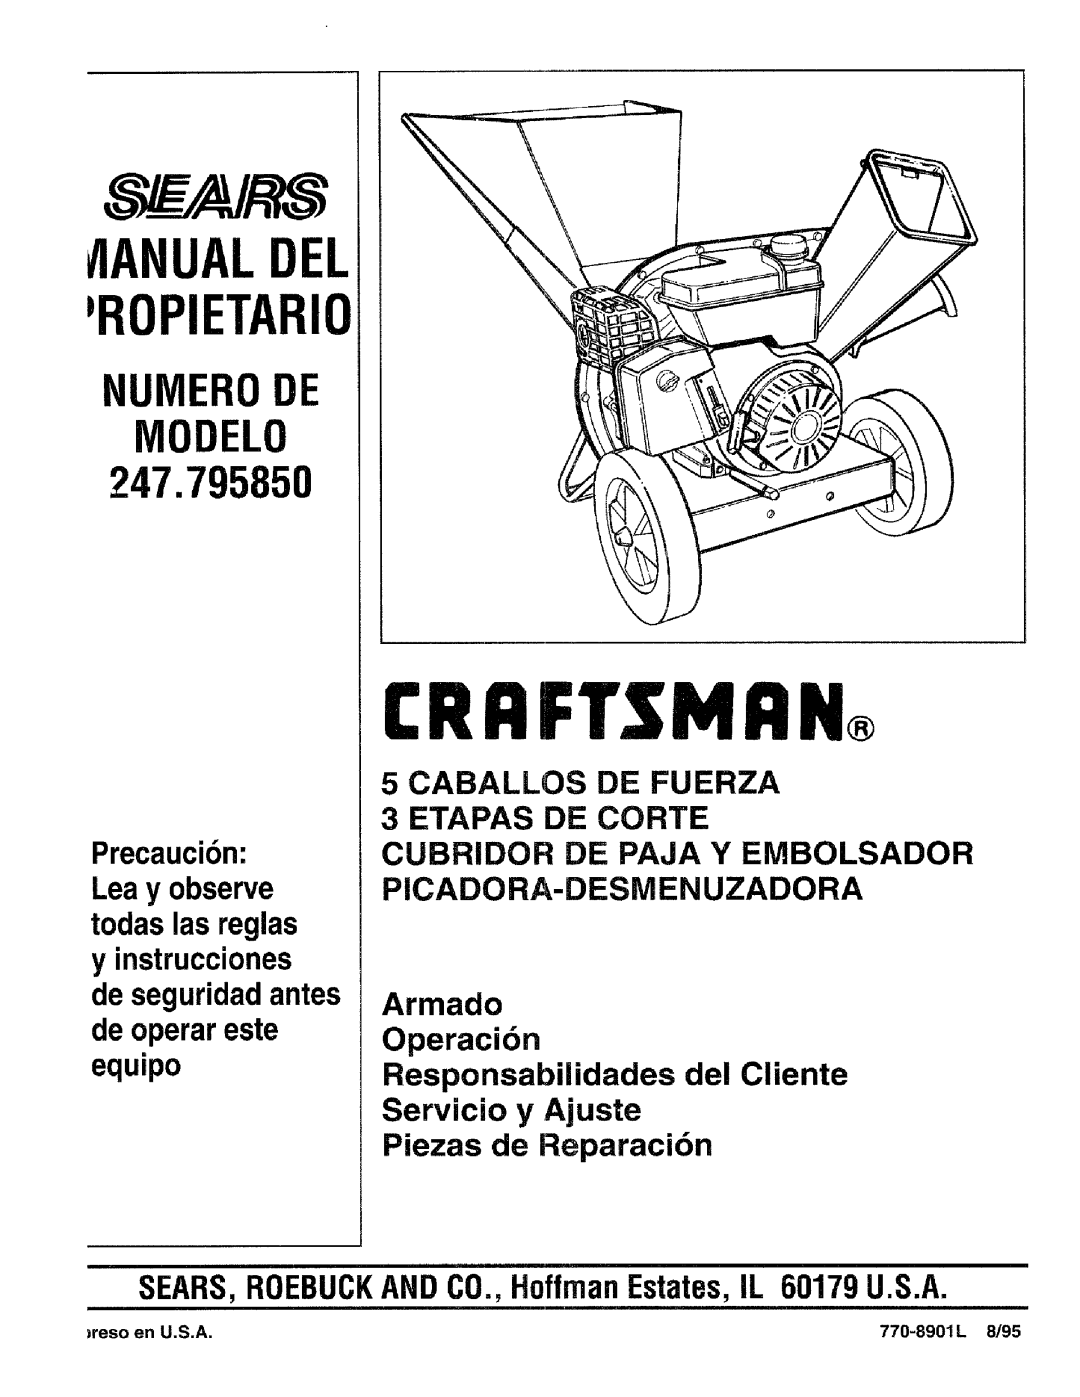 Craftsman 79585 manual Crrftsmrn, tlANUALDEI ROPIErARIO, Numero De Modelo 